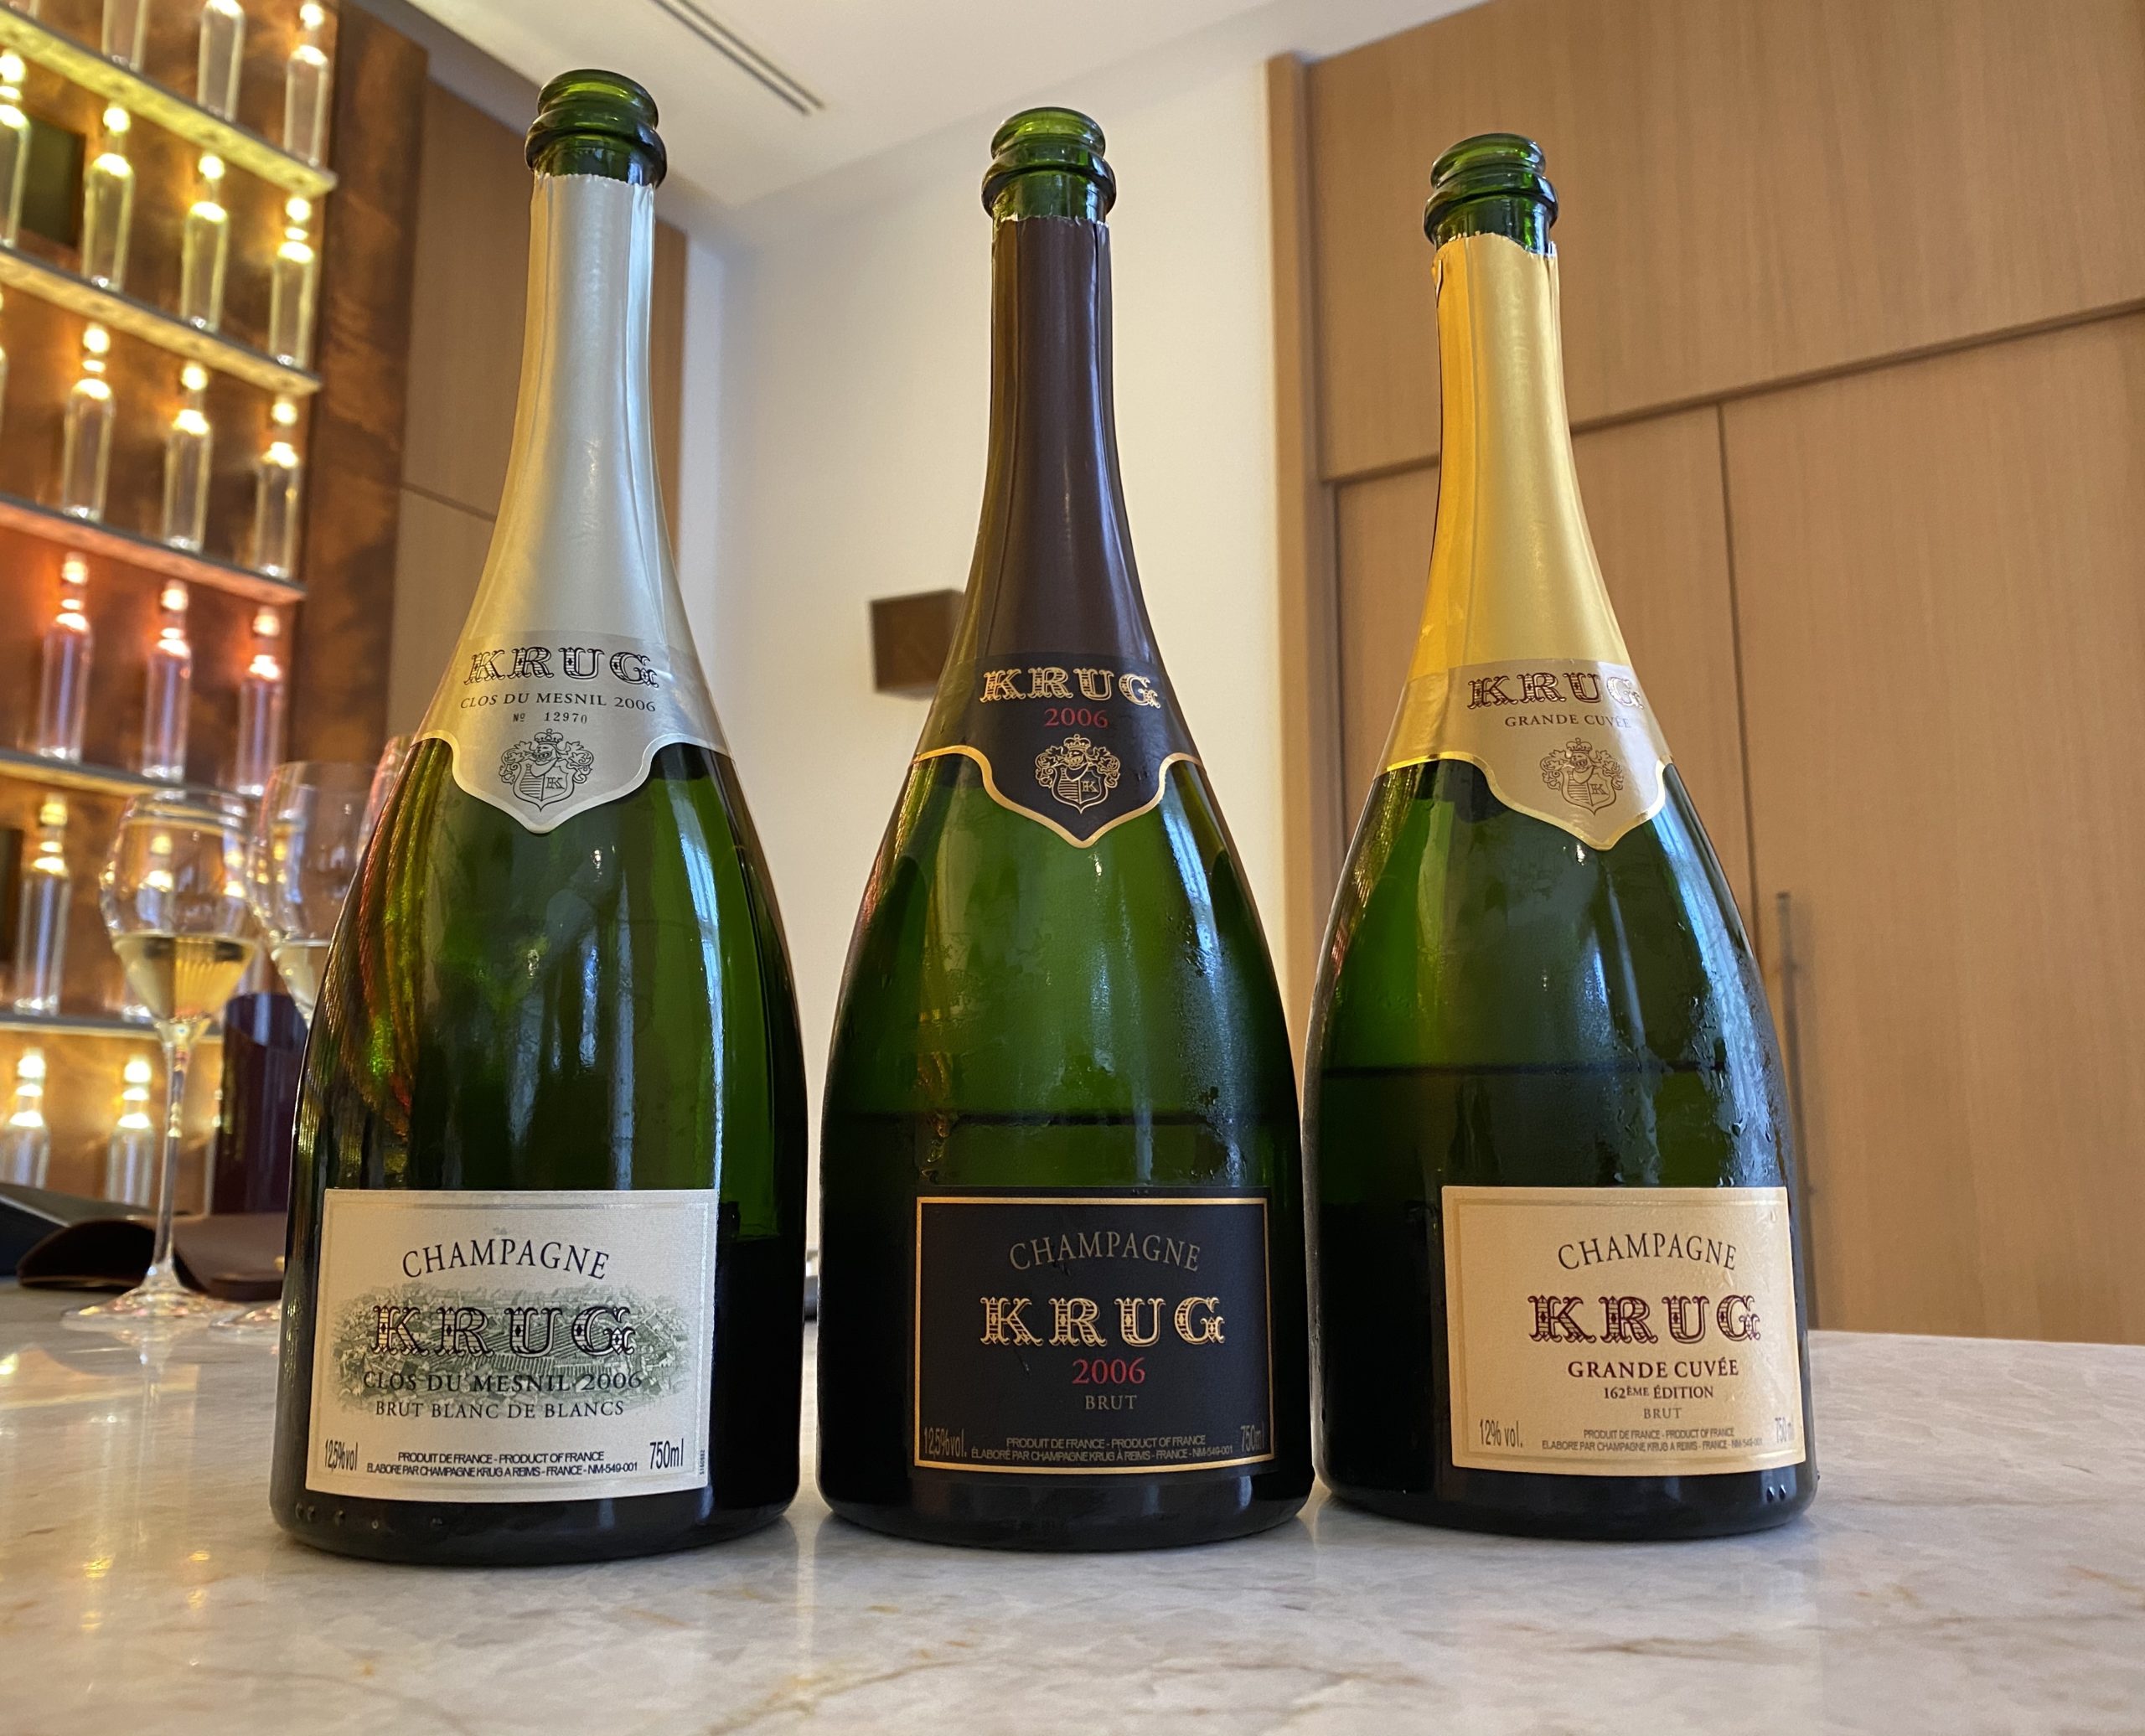 Olivier Krug of Krug Champagne